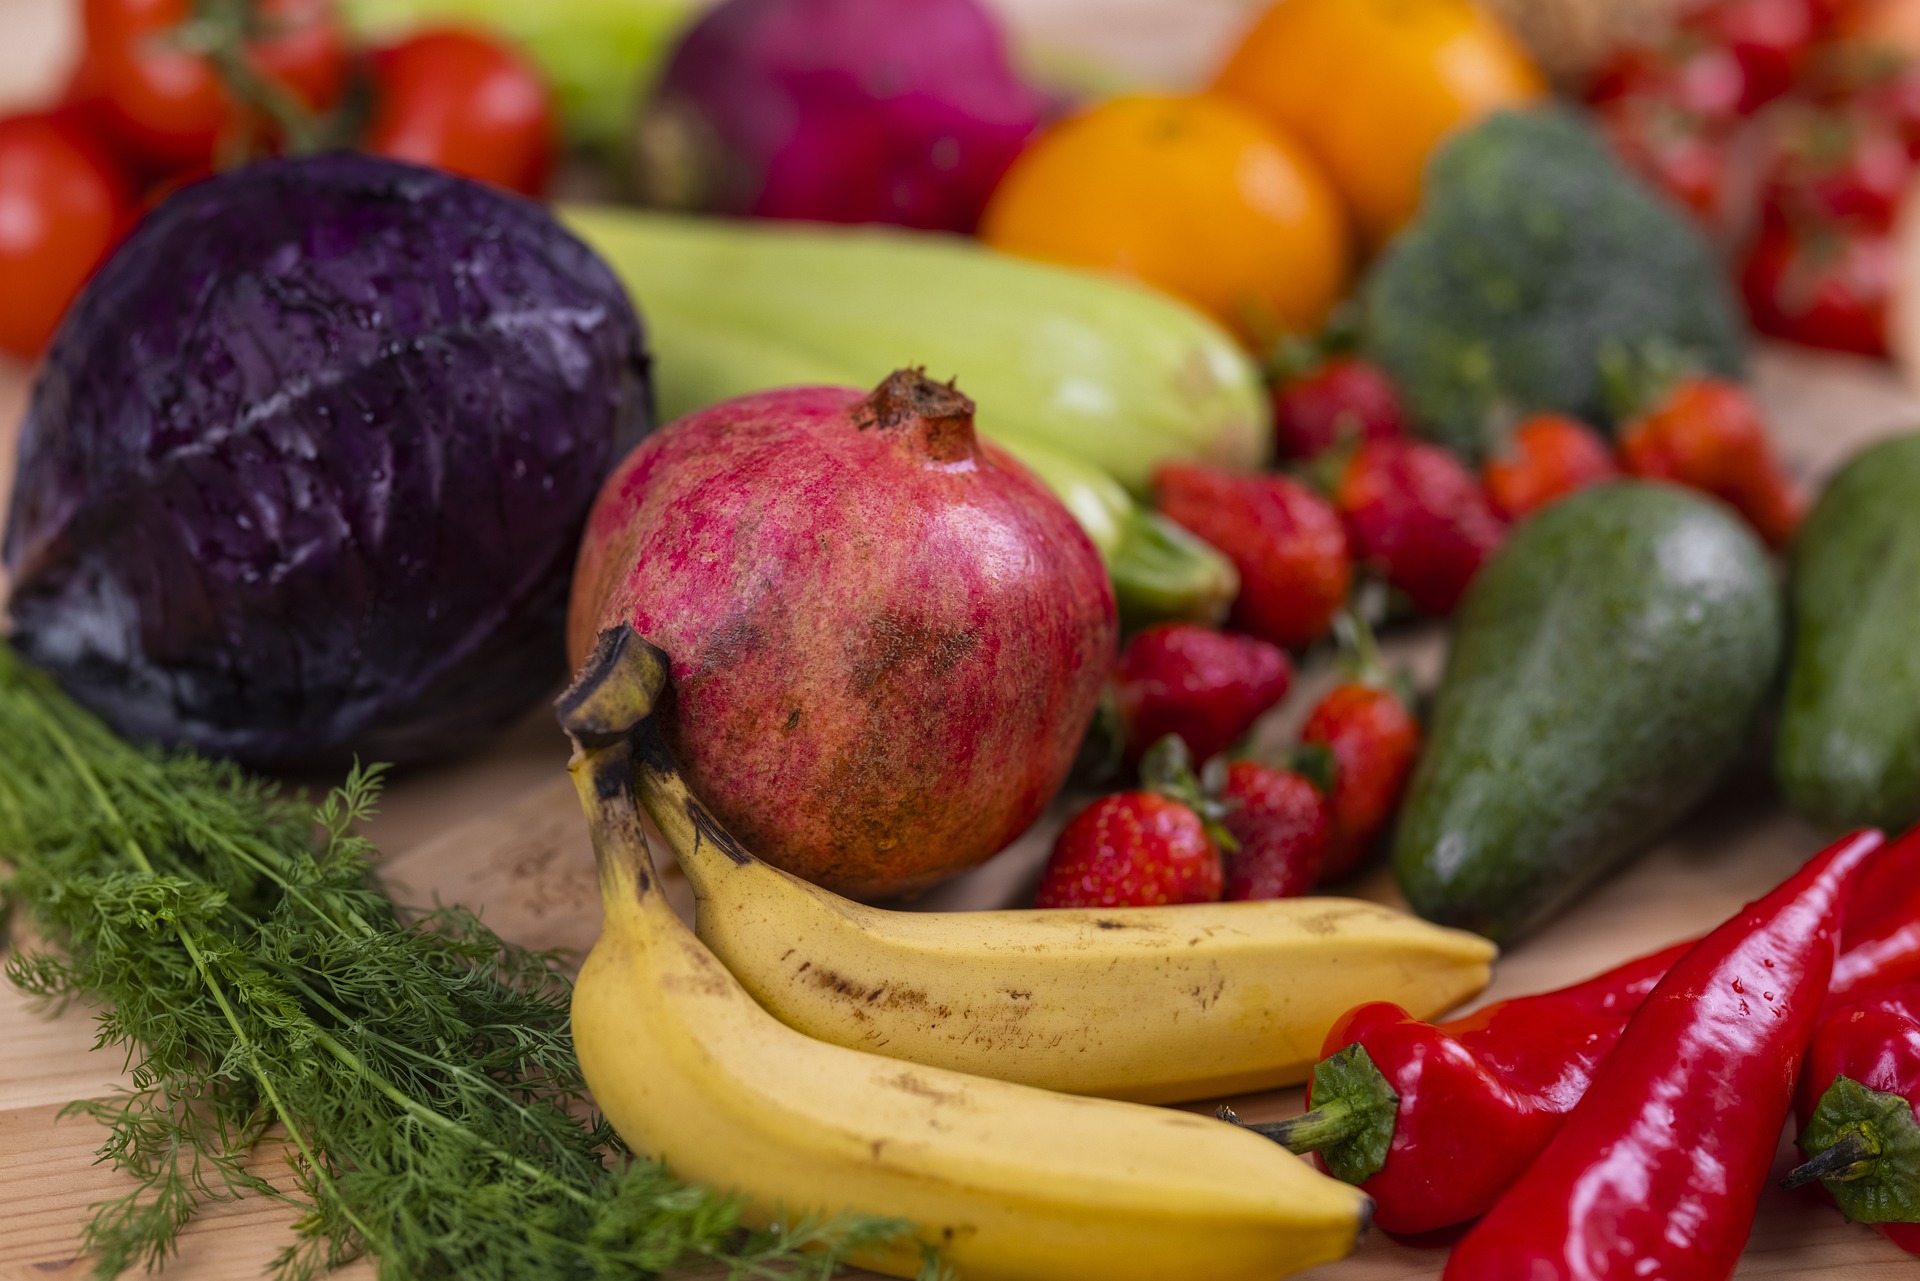 Veias, artérias e rins saudáveis: 5 alimentos que melhoram a saúde e você deve incluir na dieta